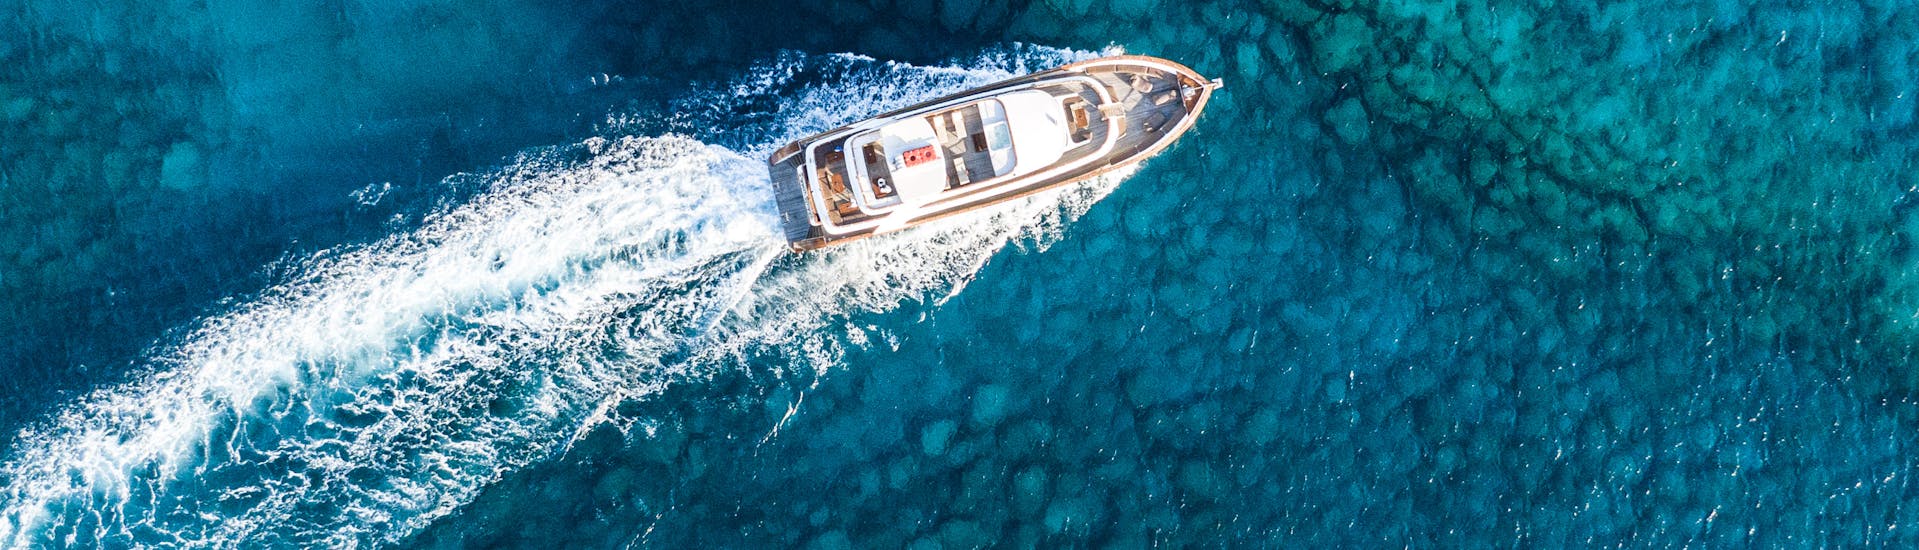 Le luxueux bateau utilisé pour la balade en bateau de luxe au Lagon Bleu avec déjeuner avec Ocean Queen Ayia Napa navigue sur l'eau claire.